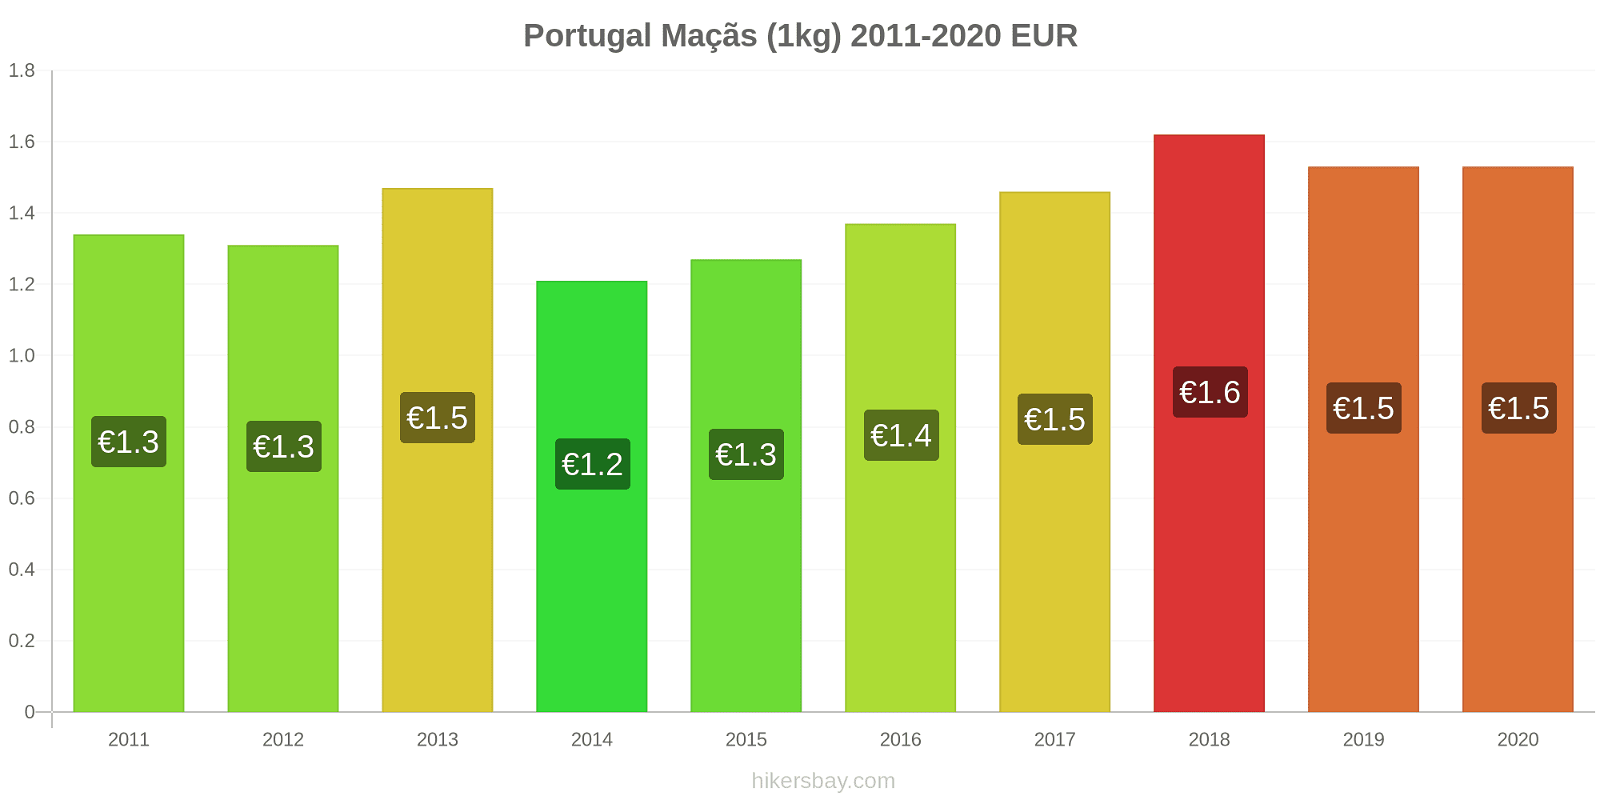 Portugal variação de preço Maçãs (1kg) hikersbay.com